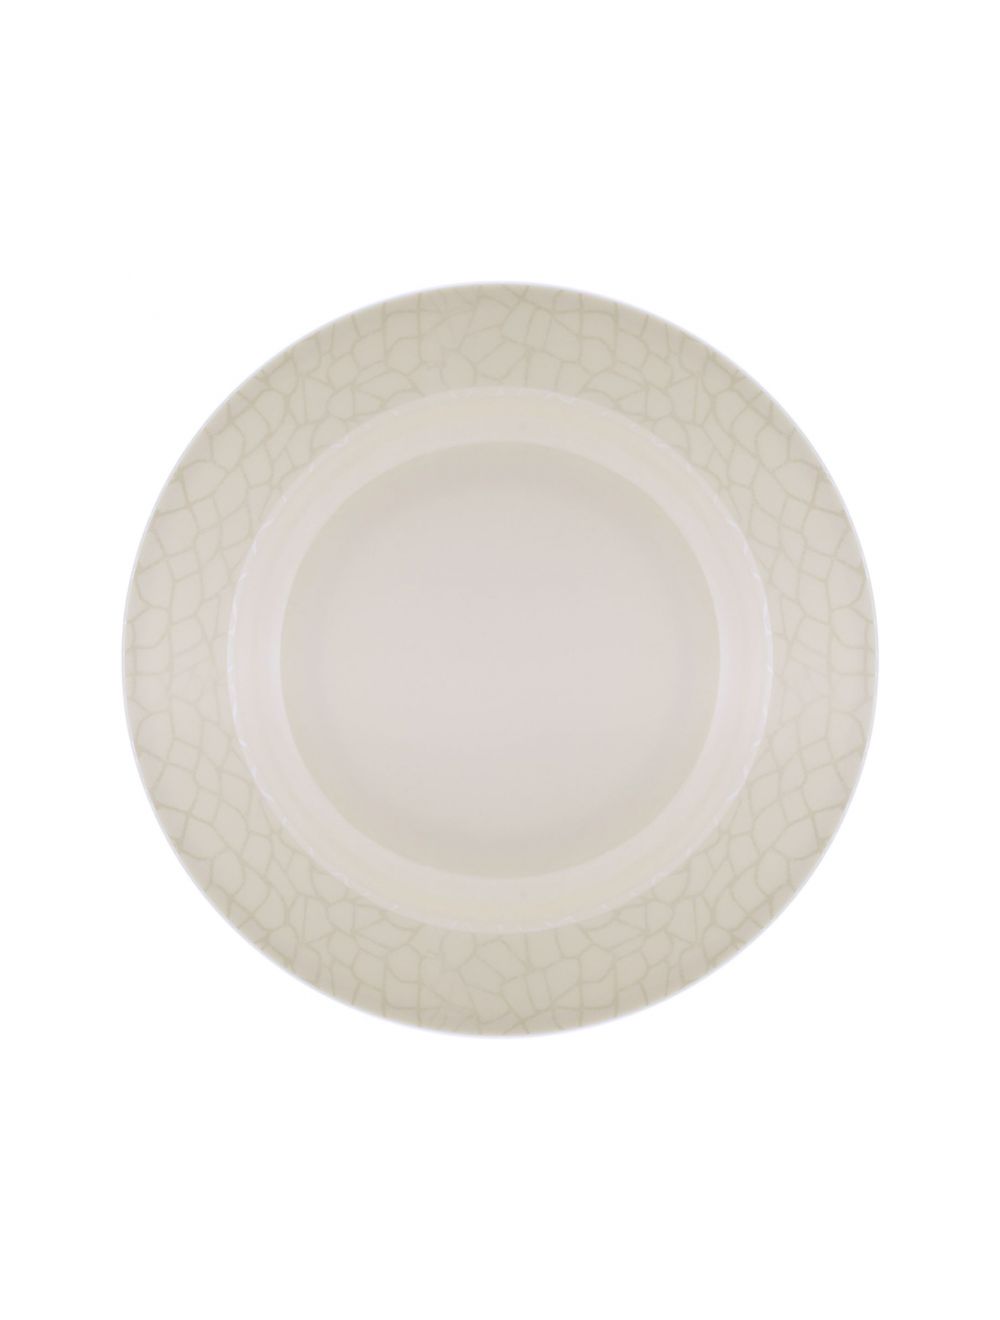 Royalford RF4487 Melamine White Pearl Dinner Plate, 10 Inch